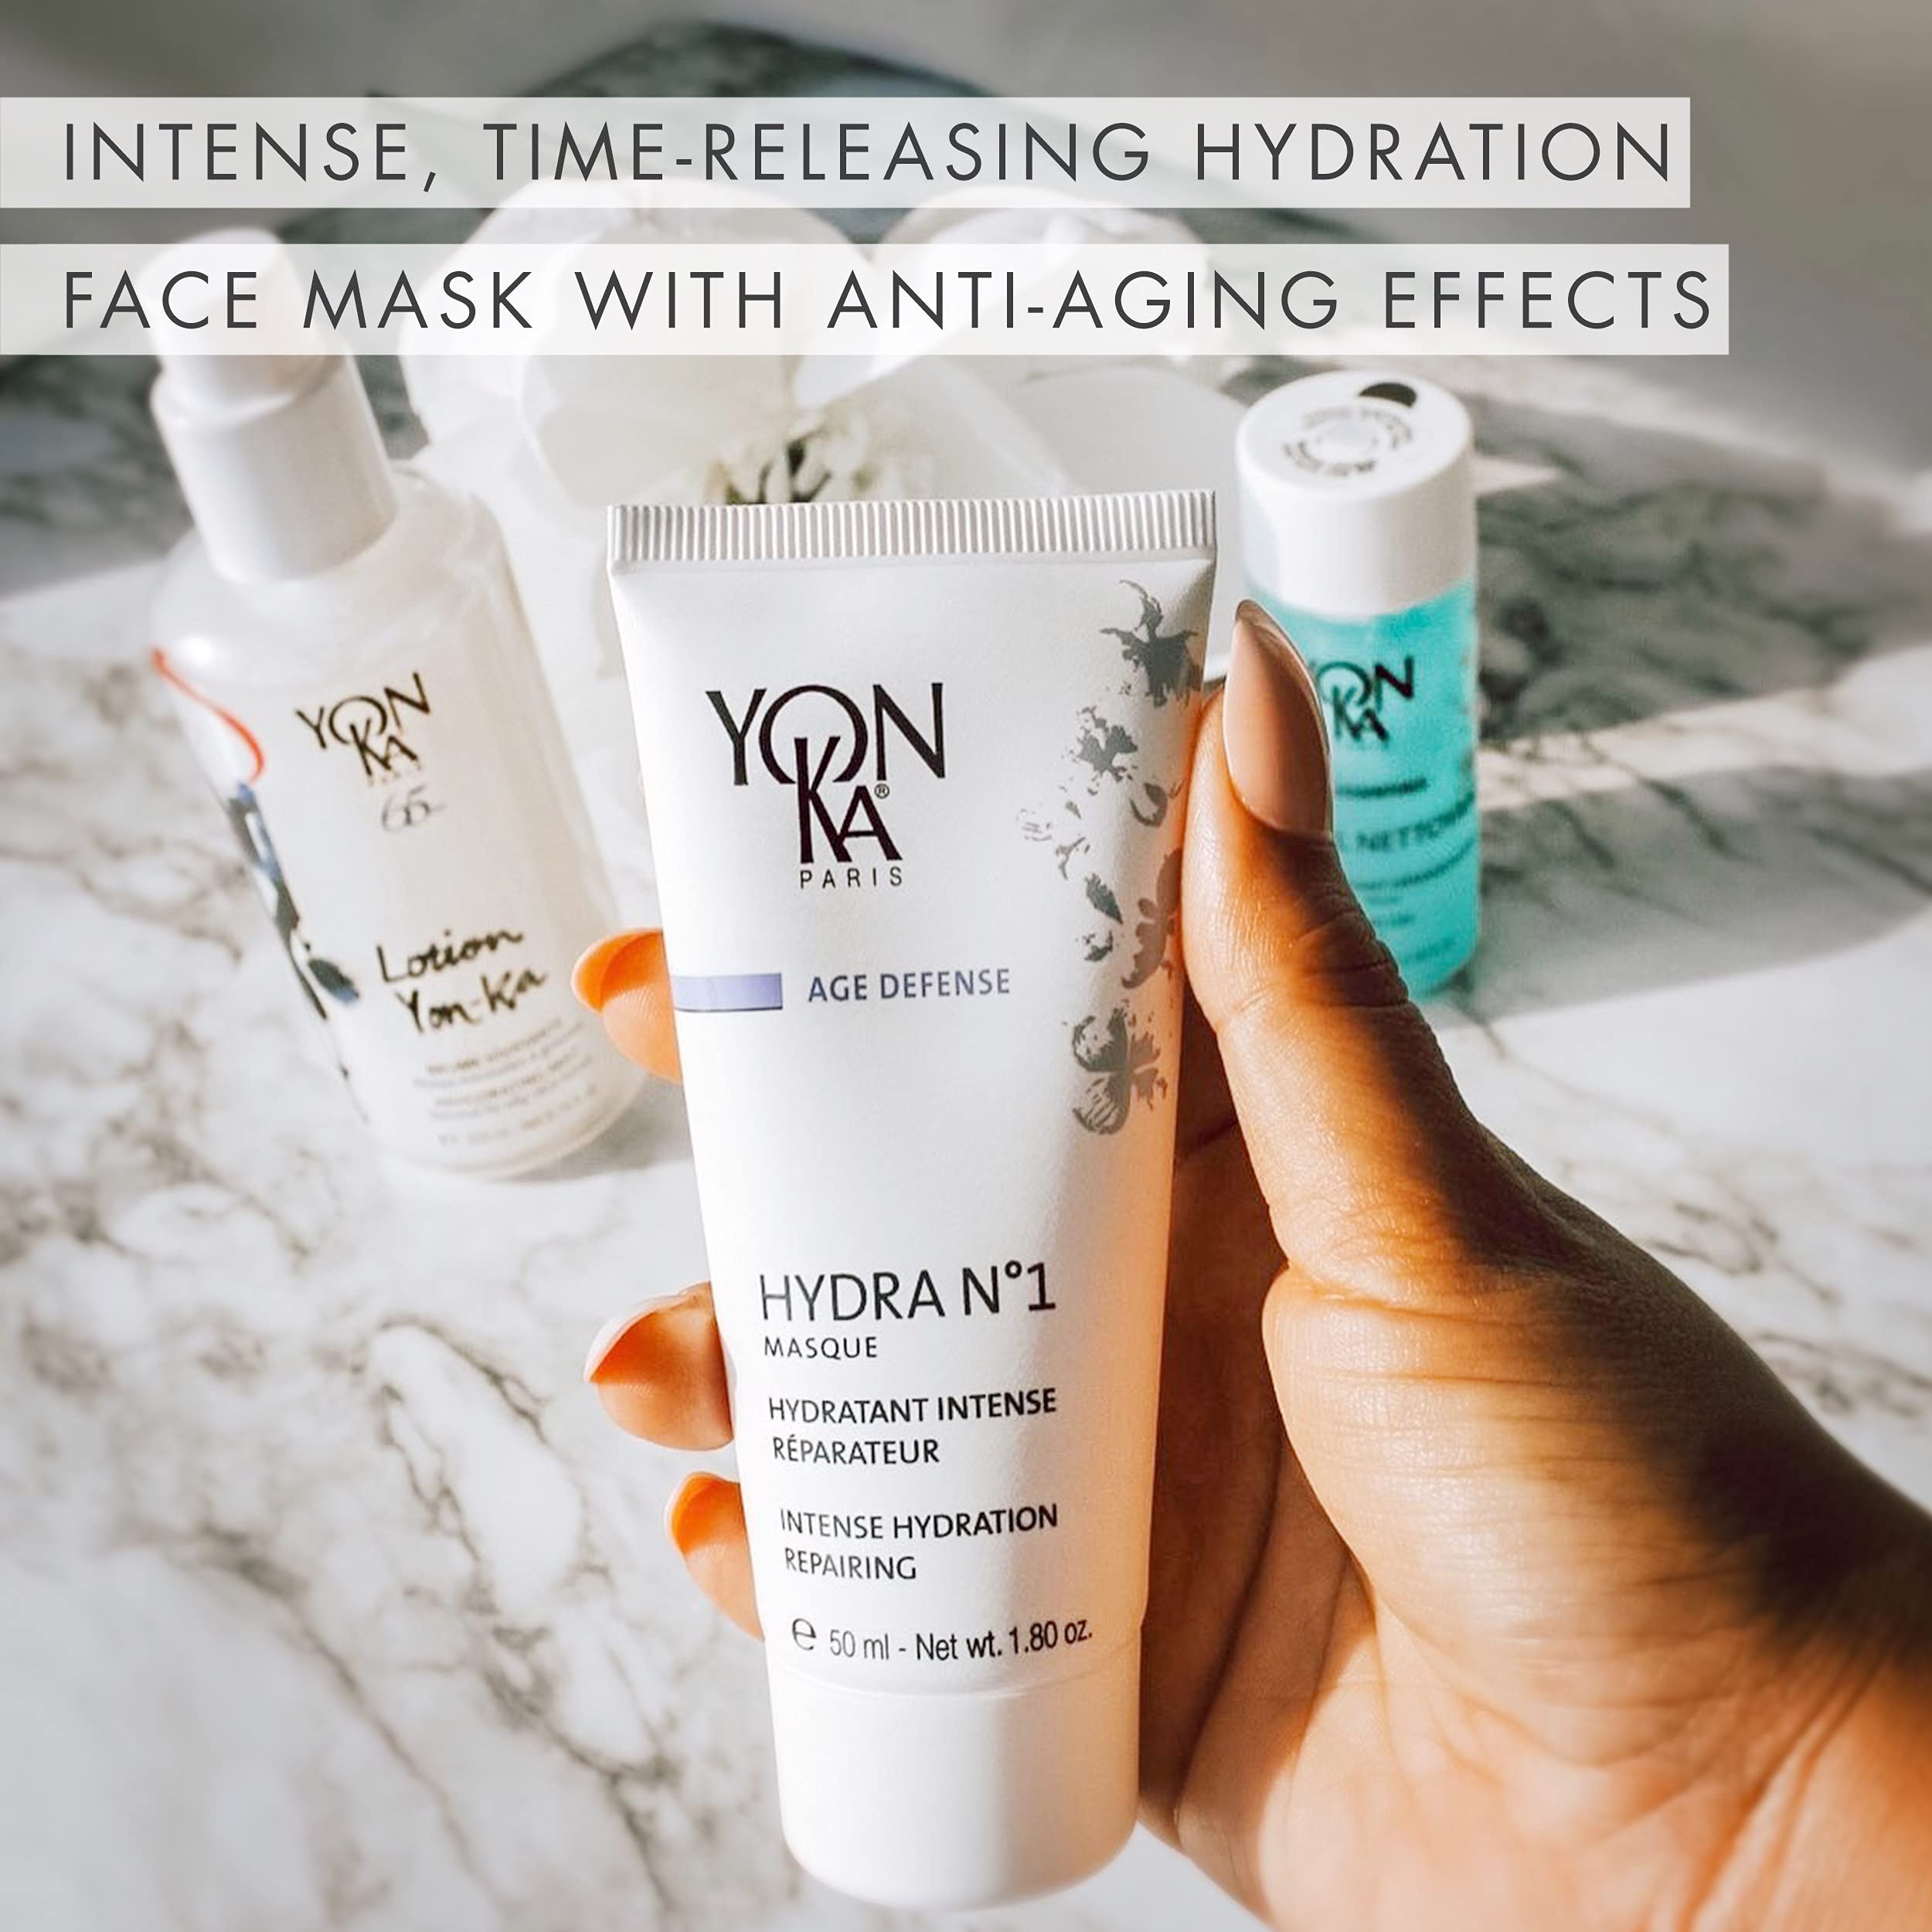 Yon-Ka Hydra No. 1 Masque Hydrating Face Mask with Vitamin C and Aloe Vera